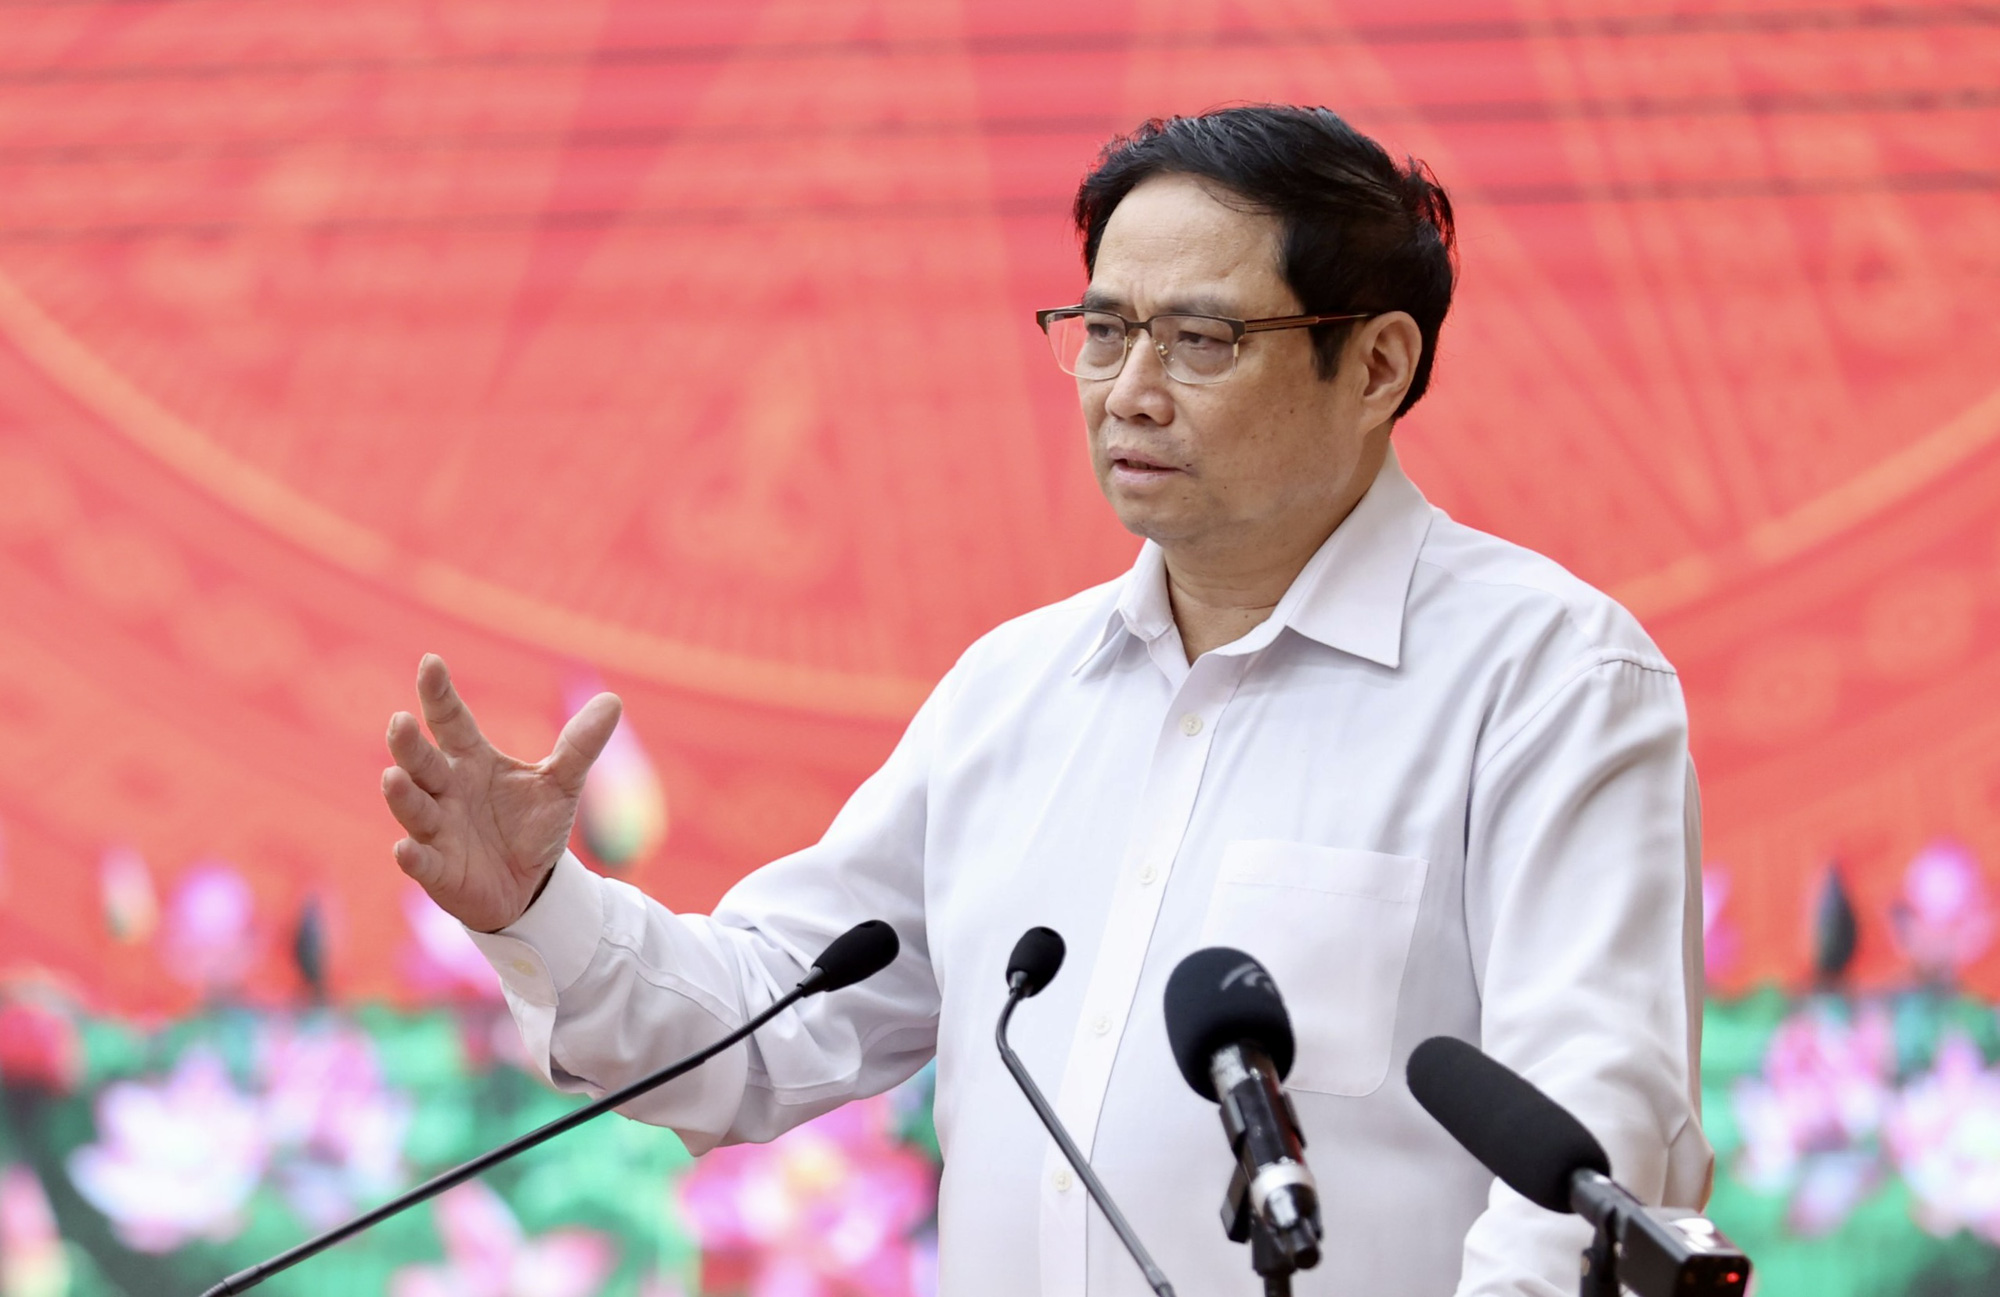 Thủ tướng phát biểu tại cuộc làm việc với lãnh đạo chủ chốt tỉnh Kiên Giang về tình hình phát triển kinh tế, xã hội năm 2021; phương hướng, nhiệm vụ, giải pháp phát triển năm 2022 và những năm tiếp theo.